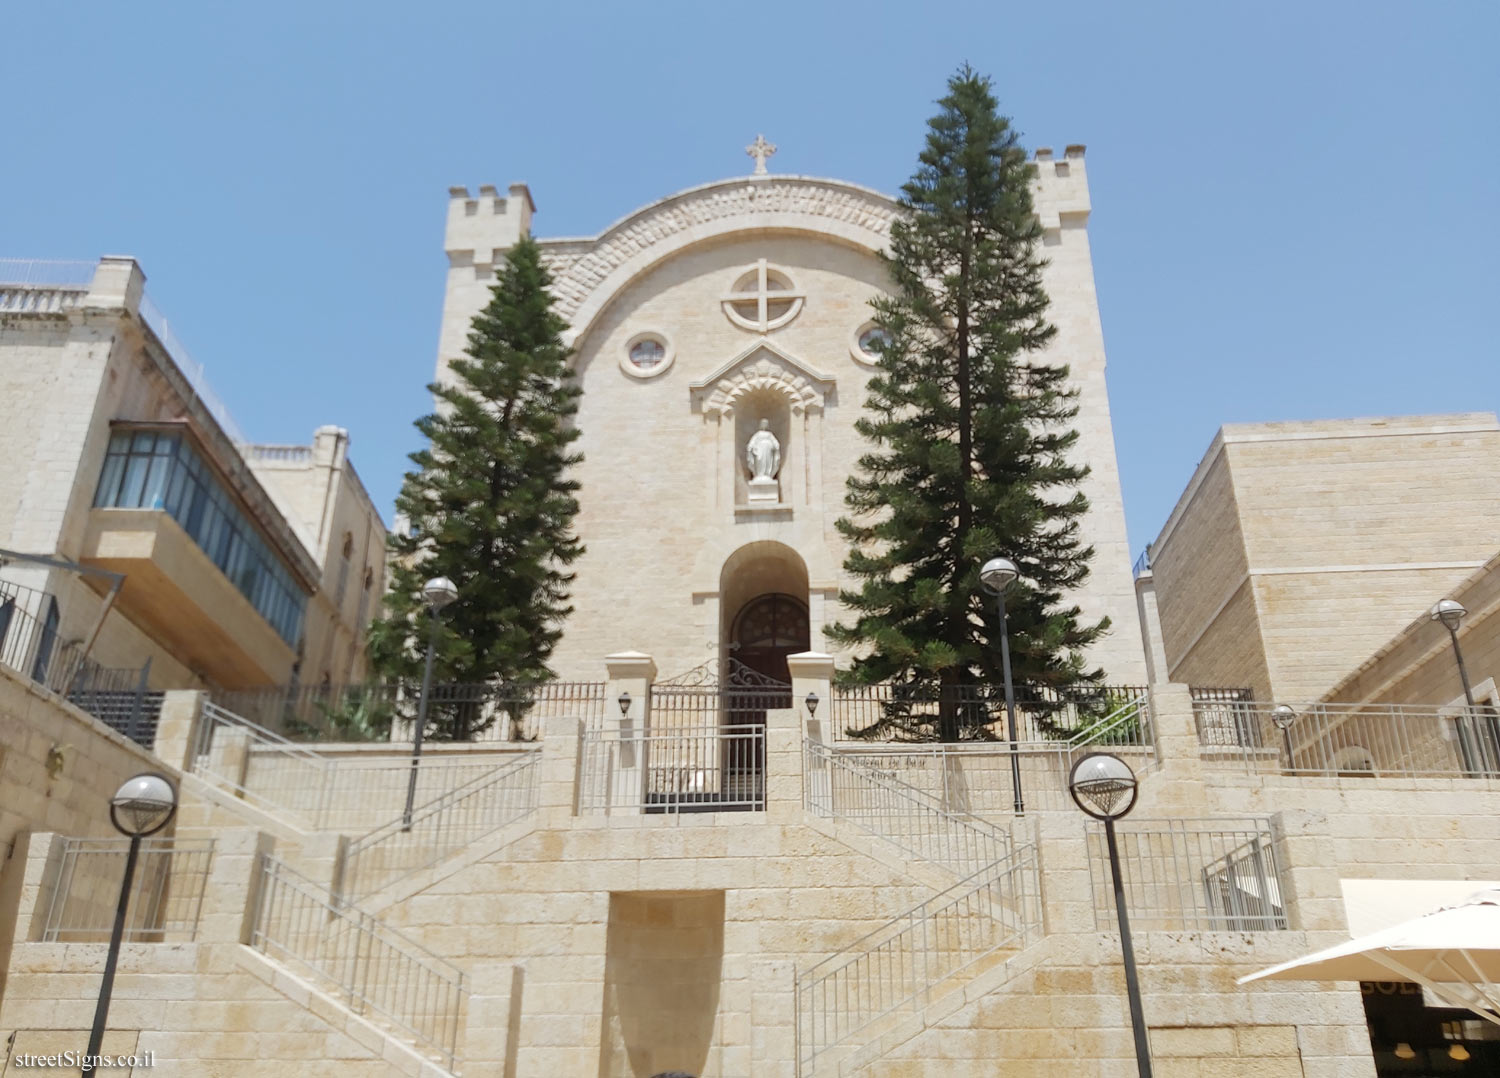 Jerusalem - Heritage Sites in Israel - St. Vincent De Paul Hospice - Mamilla Rd 8, Jerusalem